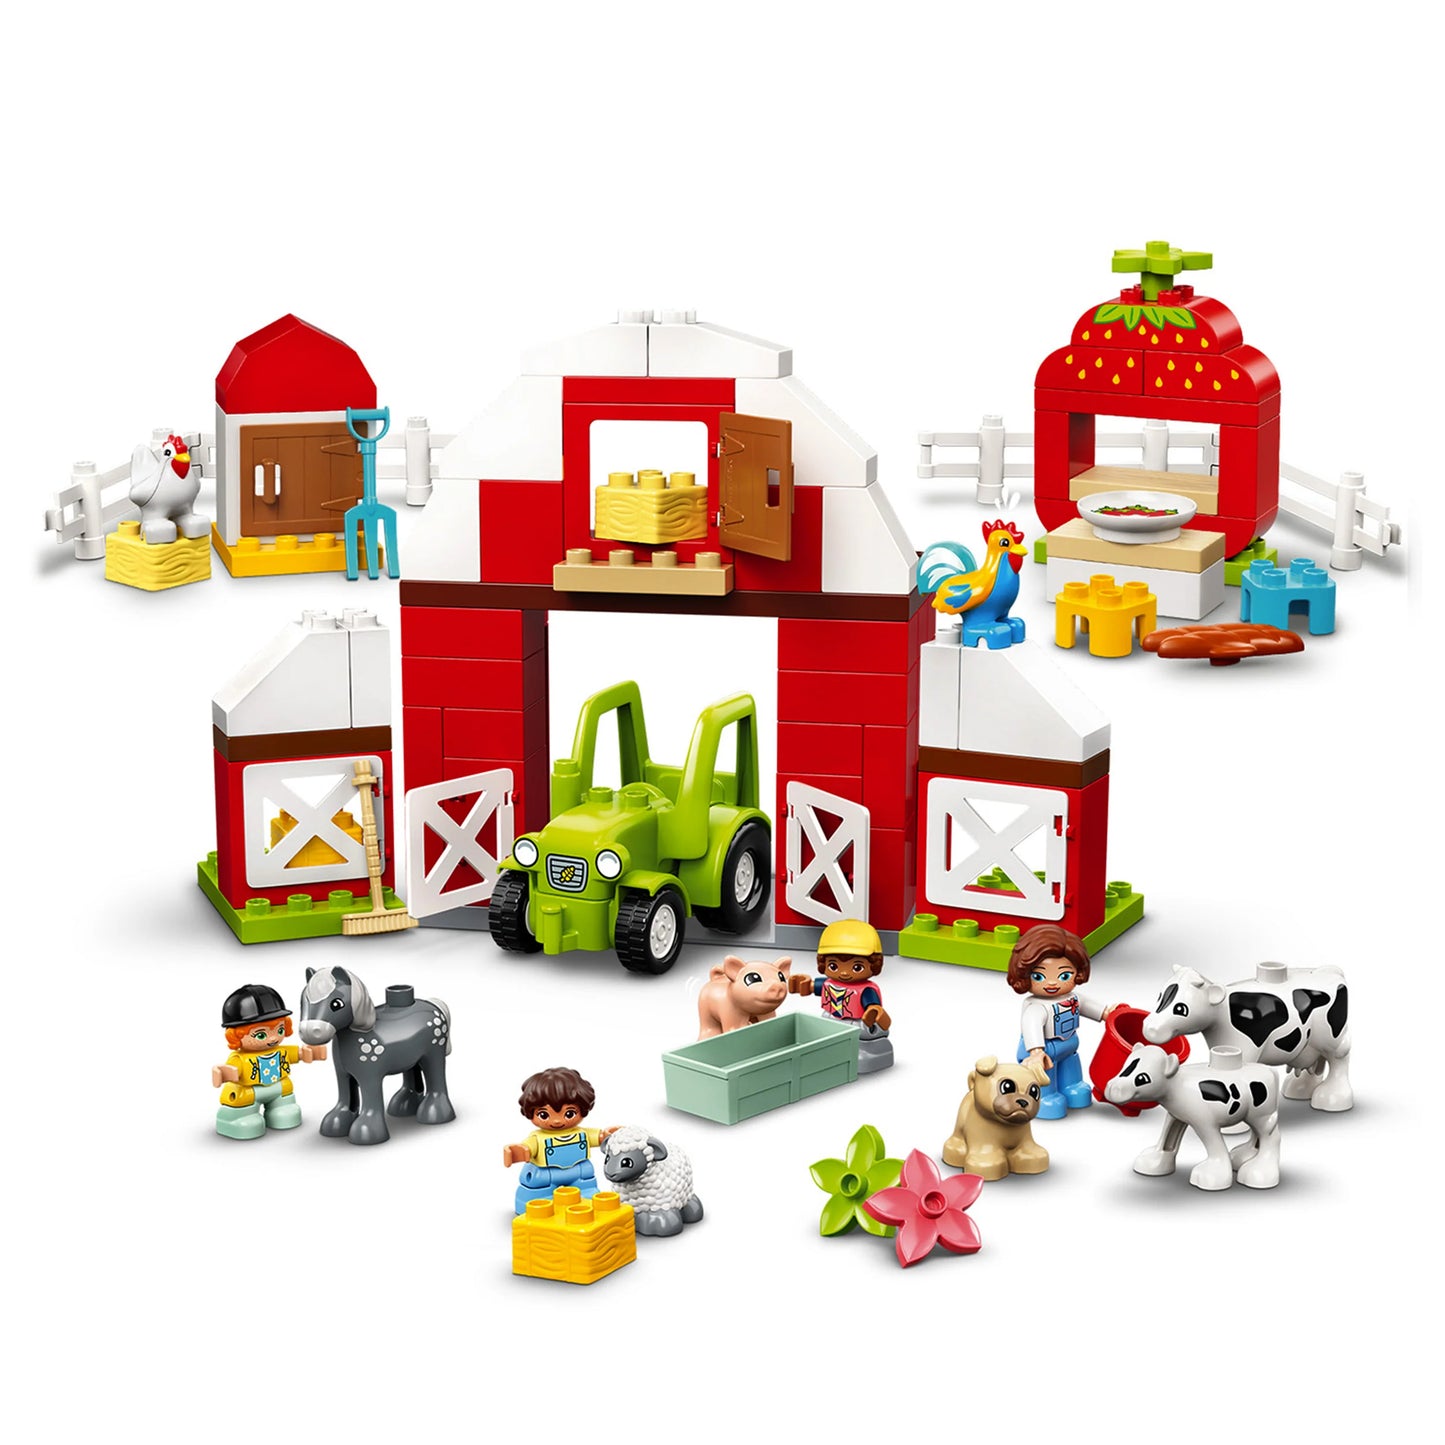 Schuur, tractor & boerderijdieren verzorgen-LEGO Duplo